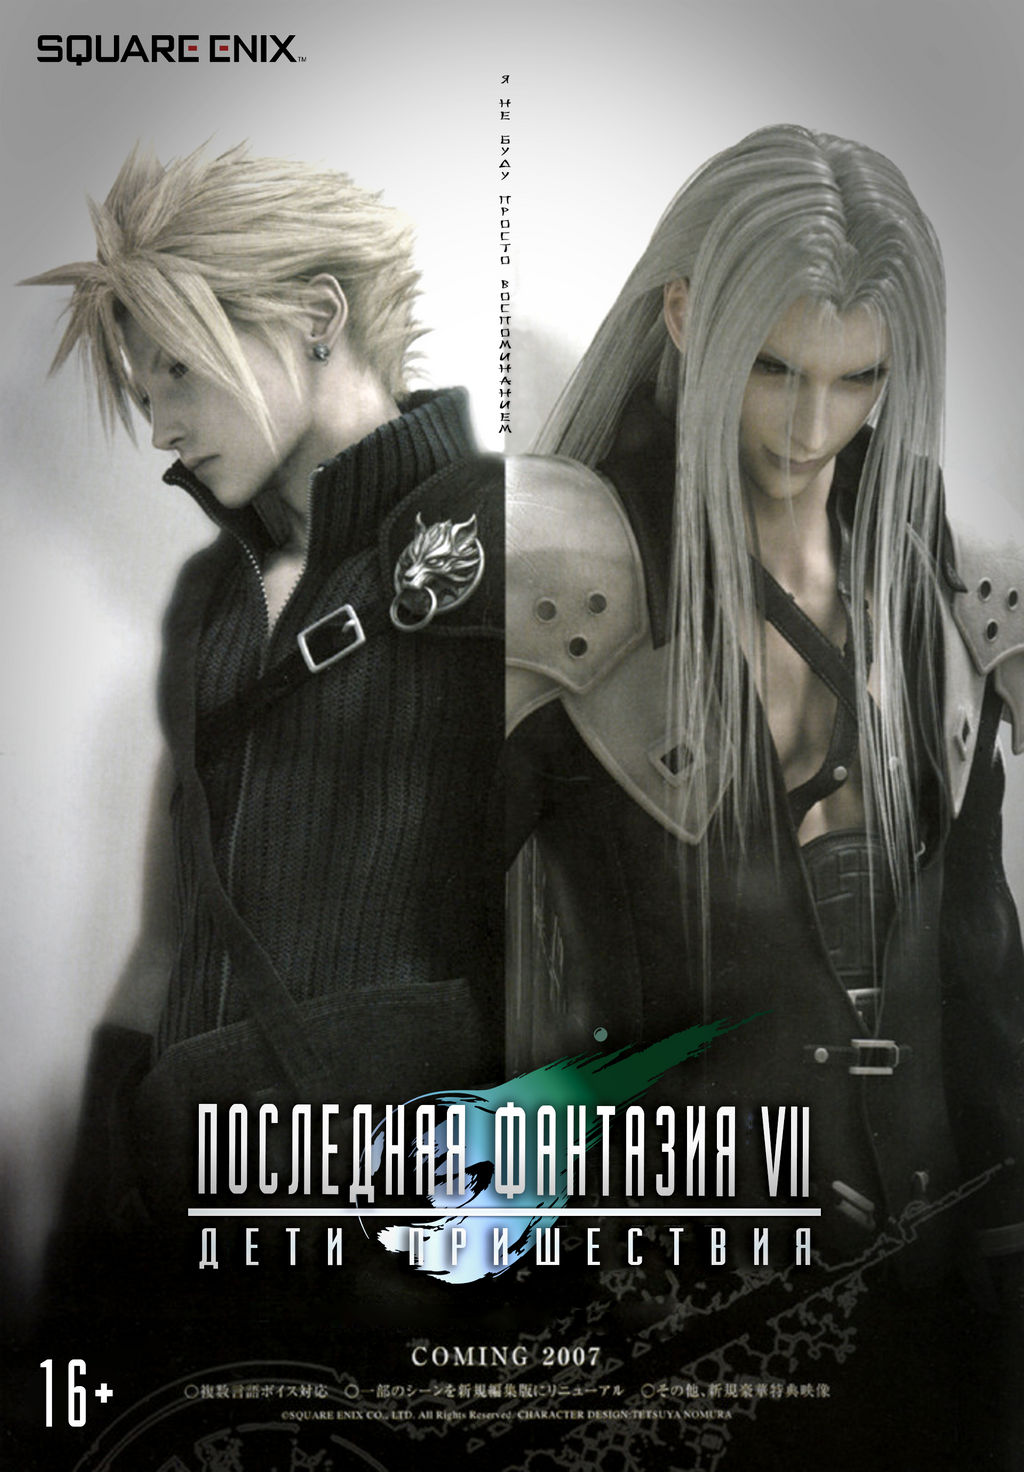 Final Fantasy VII Advent Children poster by Egoistvoice on DeviantArt